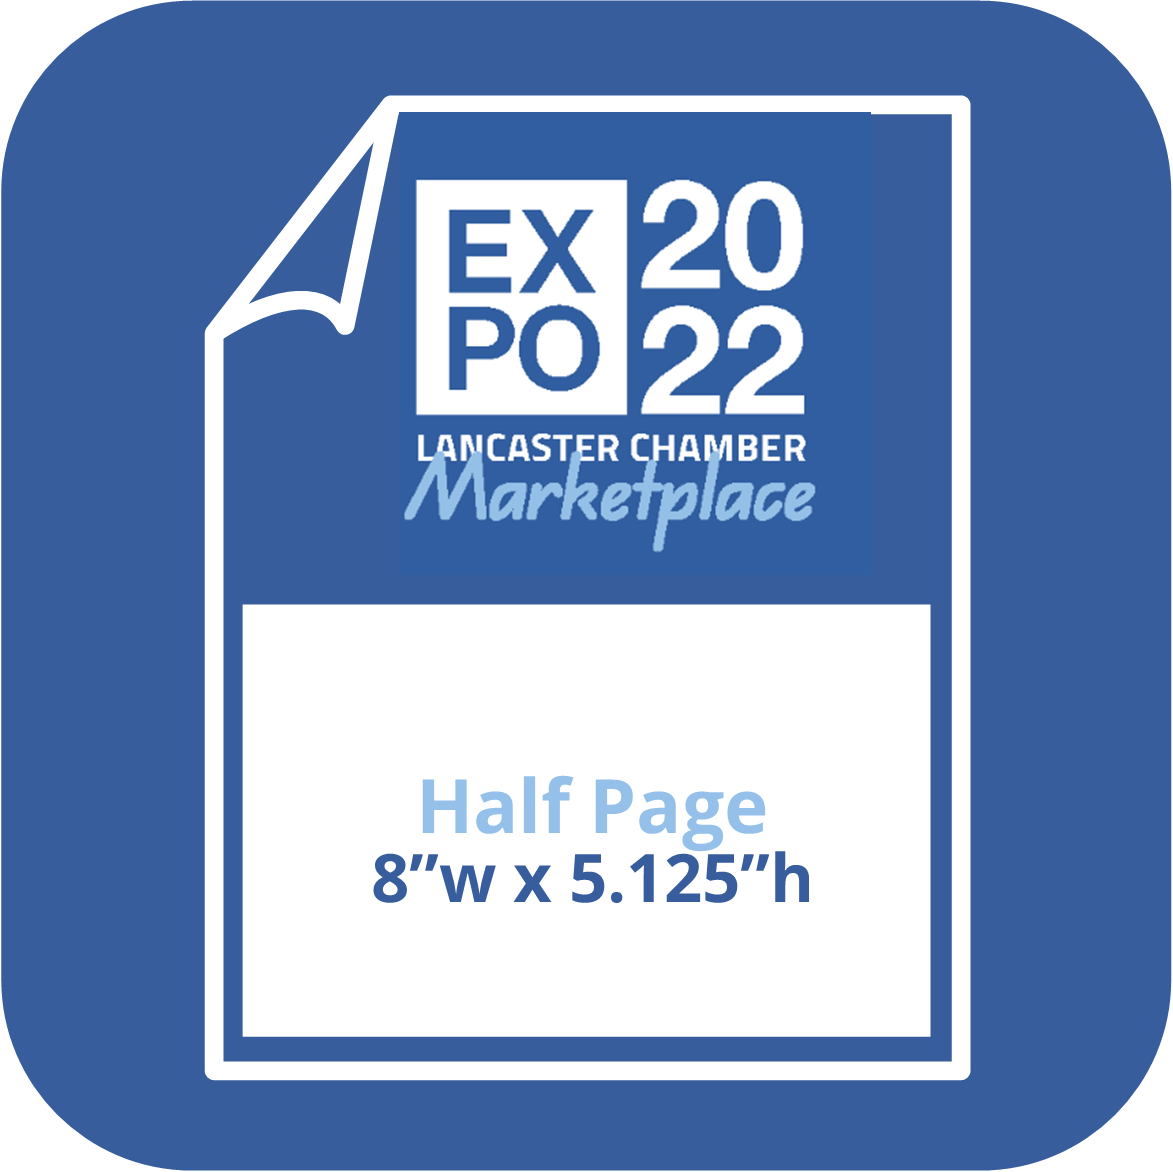 2022 Expo Publication - Half Page Ad